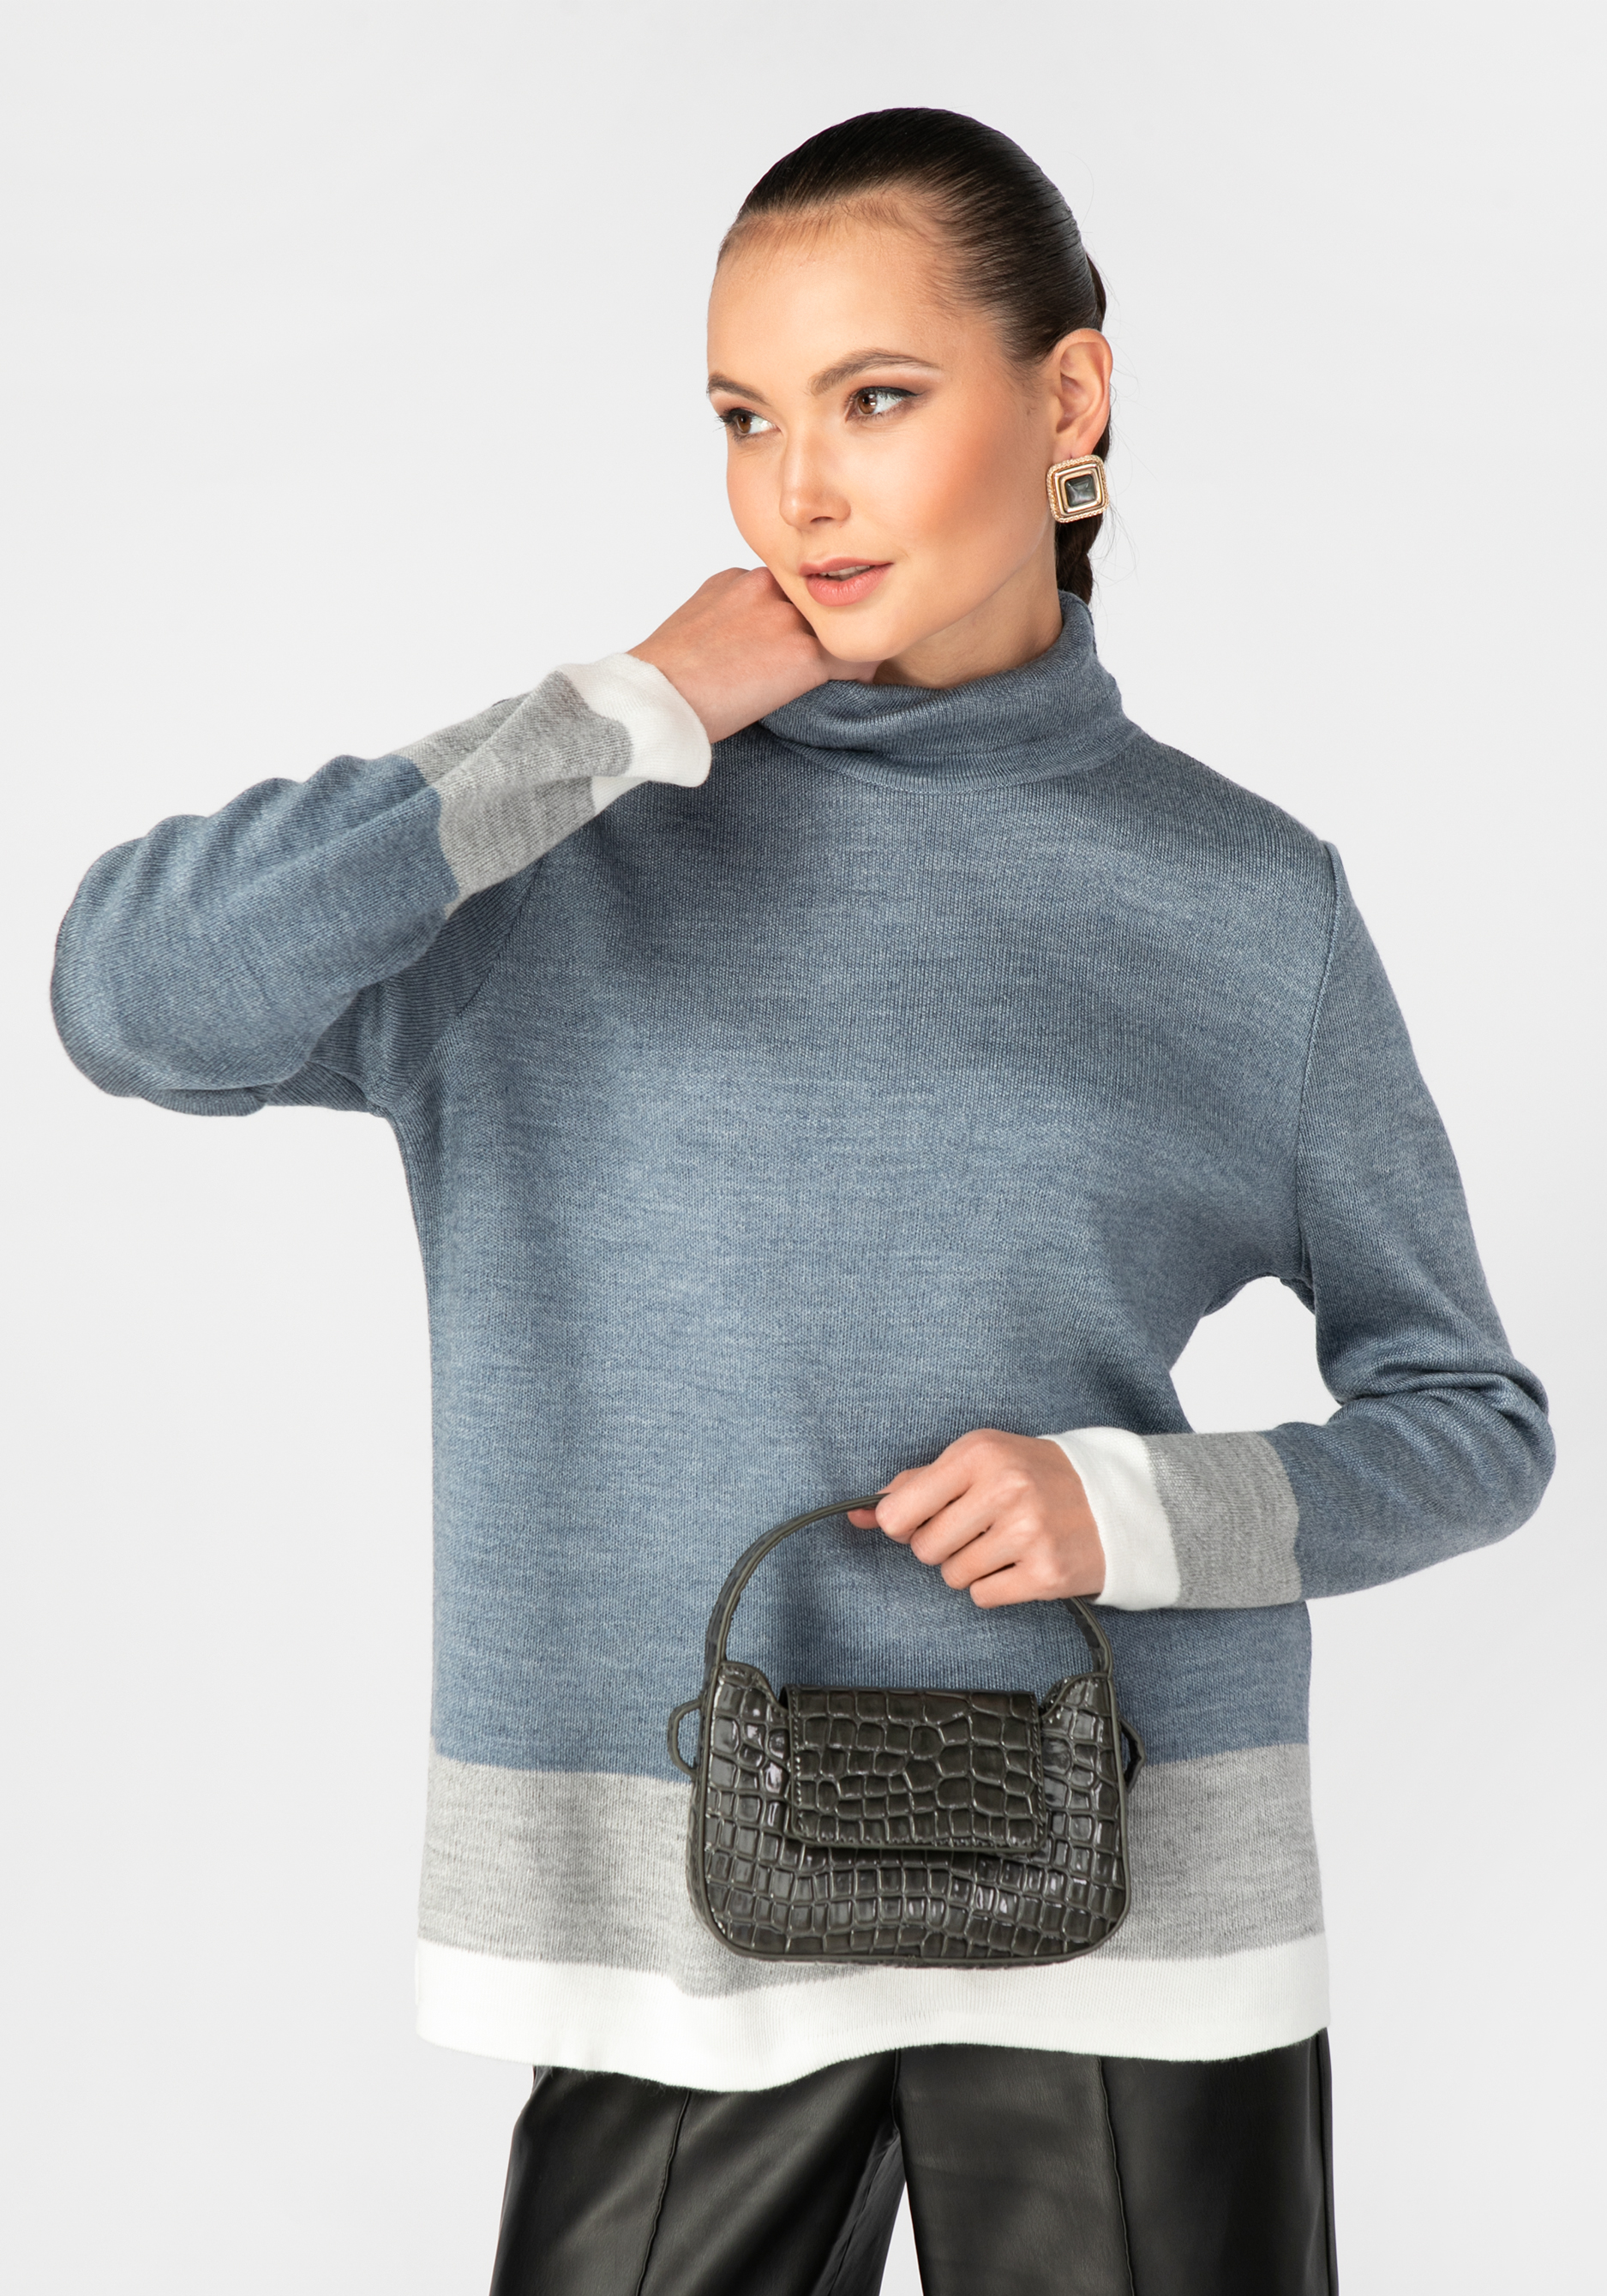 Свитер женский с контрастными полосами triol свитер дед мороз xl